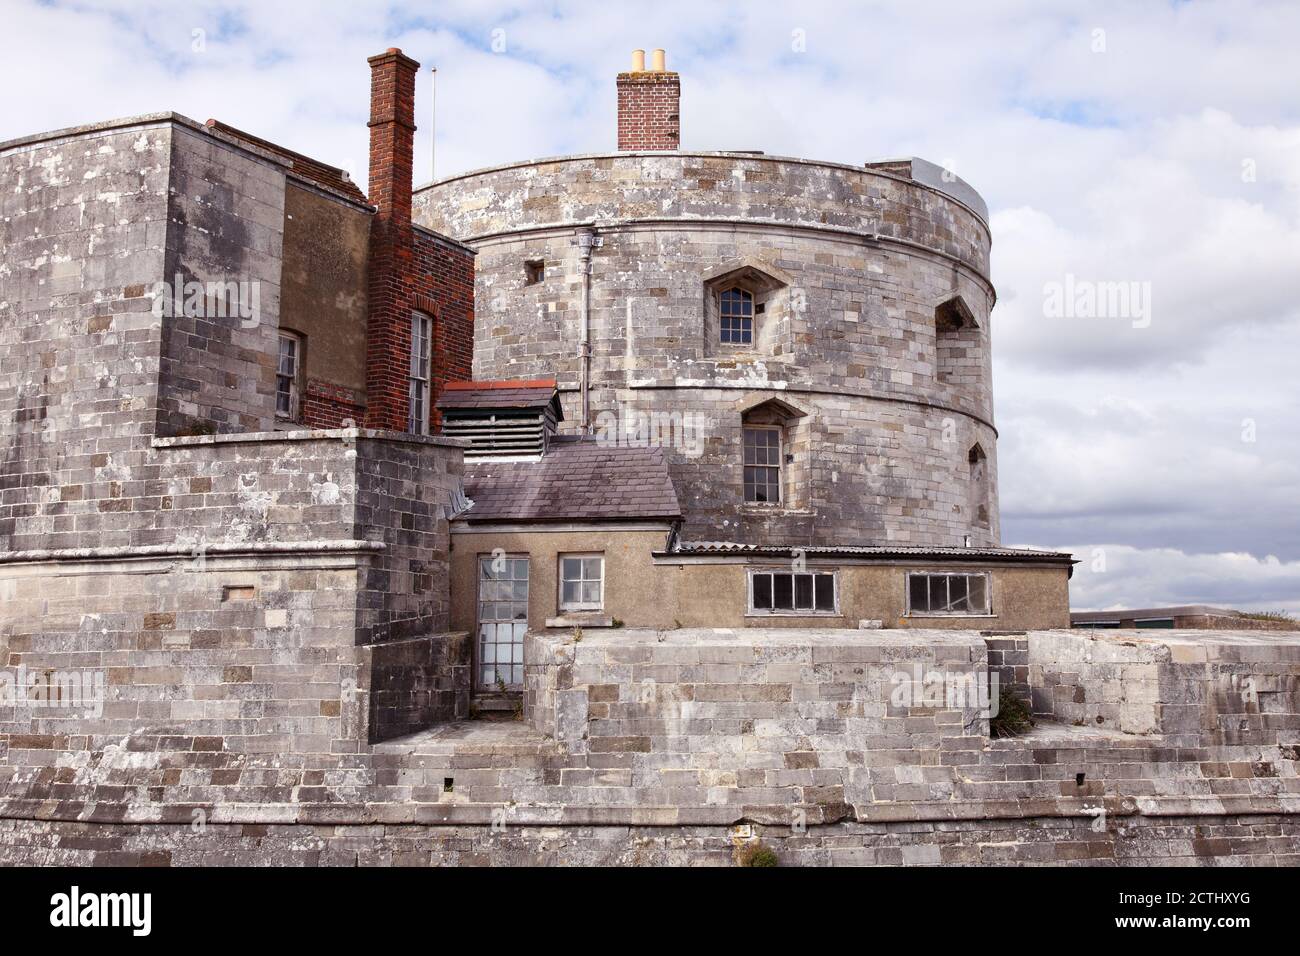 fort d'artillerie du château de CalShot sur le Spit de Calshot, Southampton, Hampshire. Exemple d'un blockhaus en pierre fort King's Device ou château Henricien. Banque D'Images